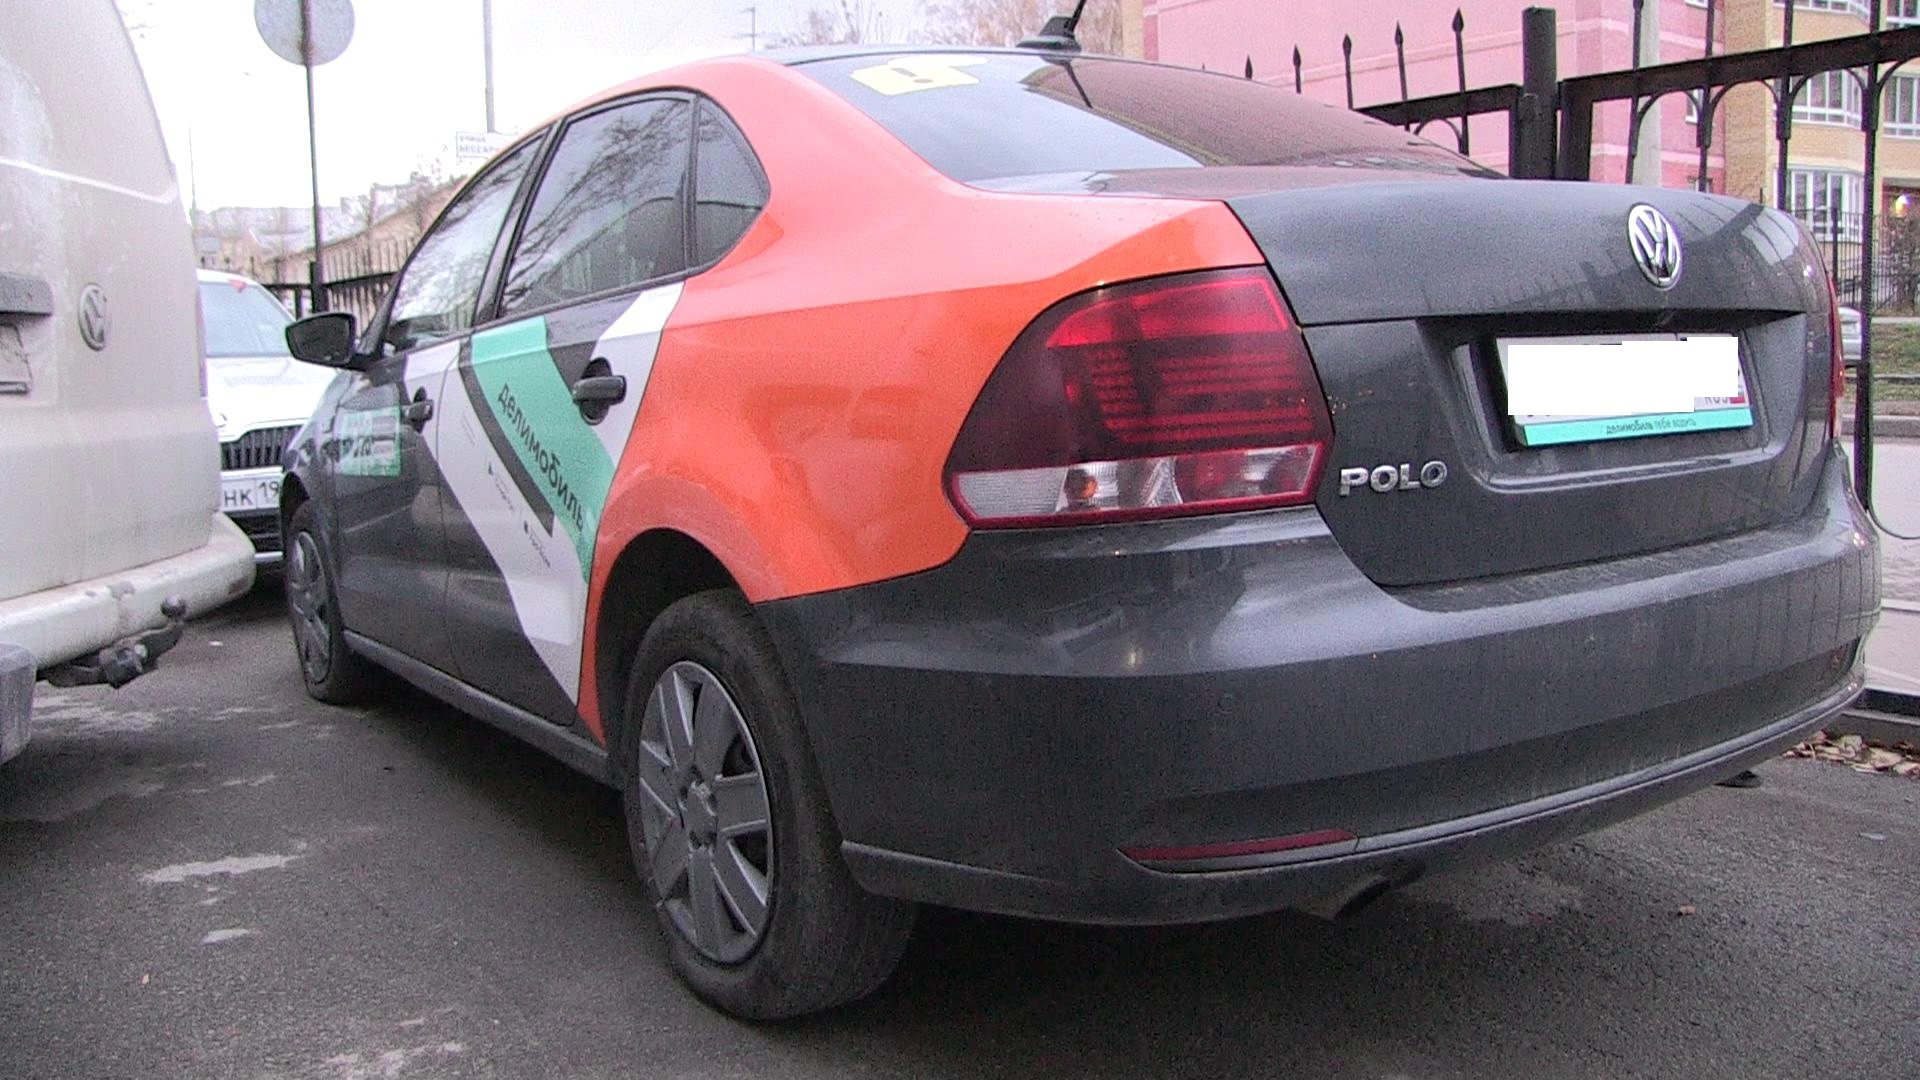 Нечестная конкуренция: в Екатеринбурге владелец таксопарка разбирал на запчасти машины каршеринга